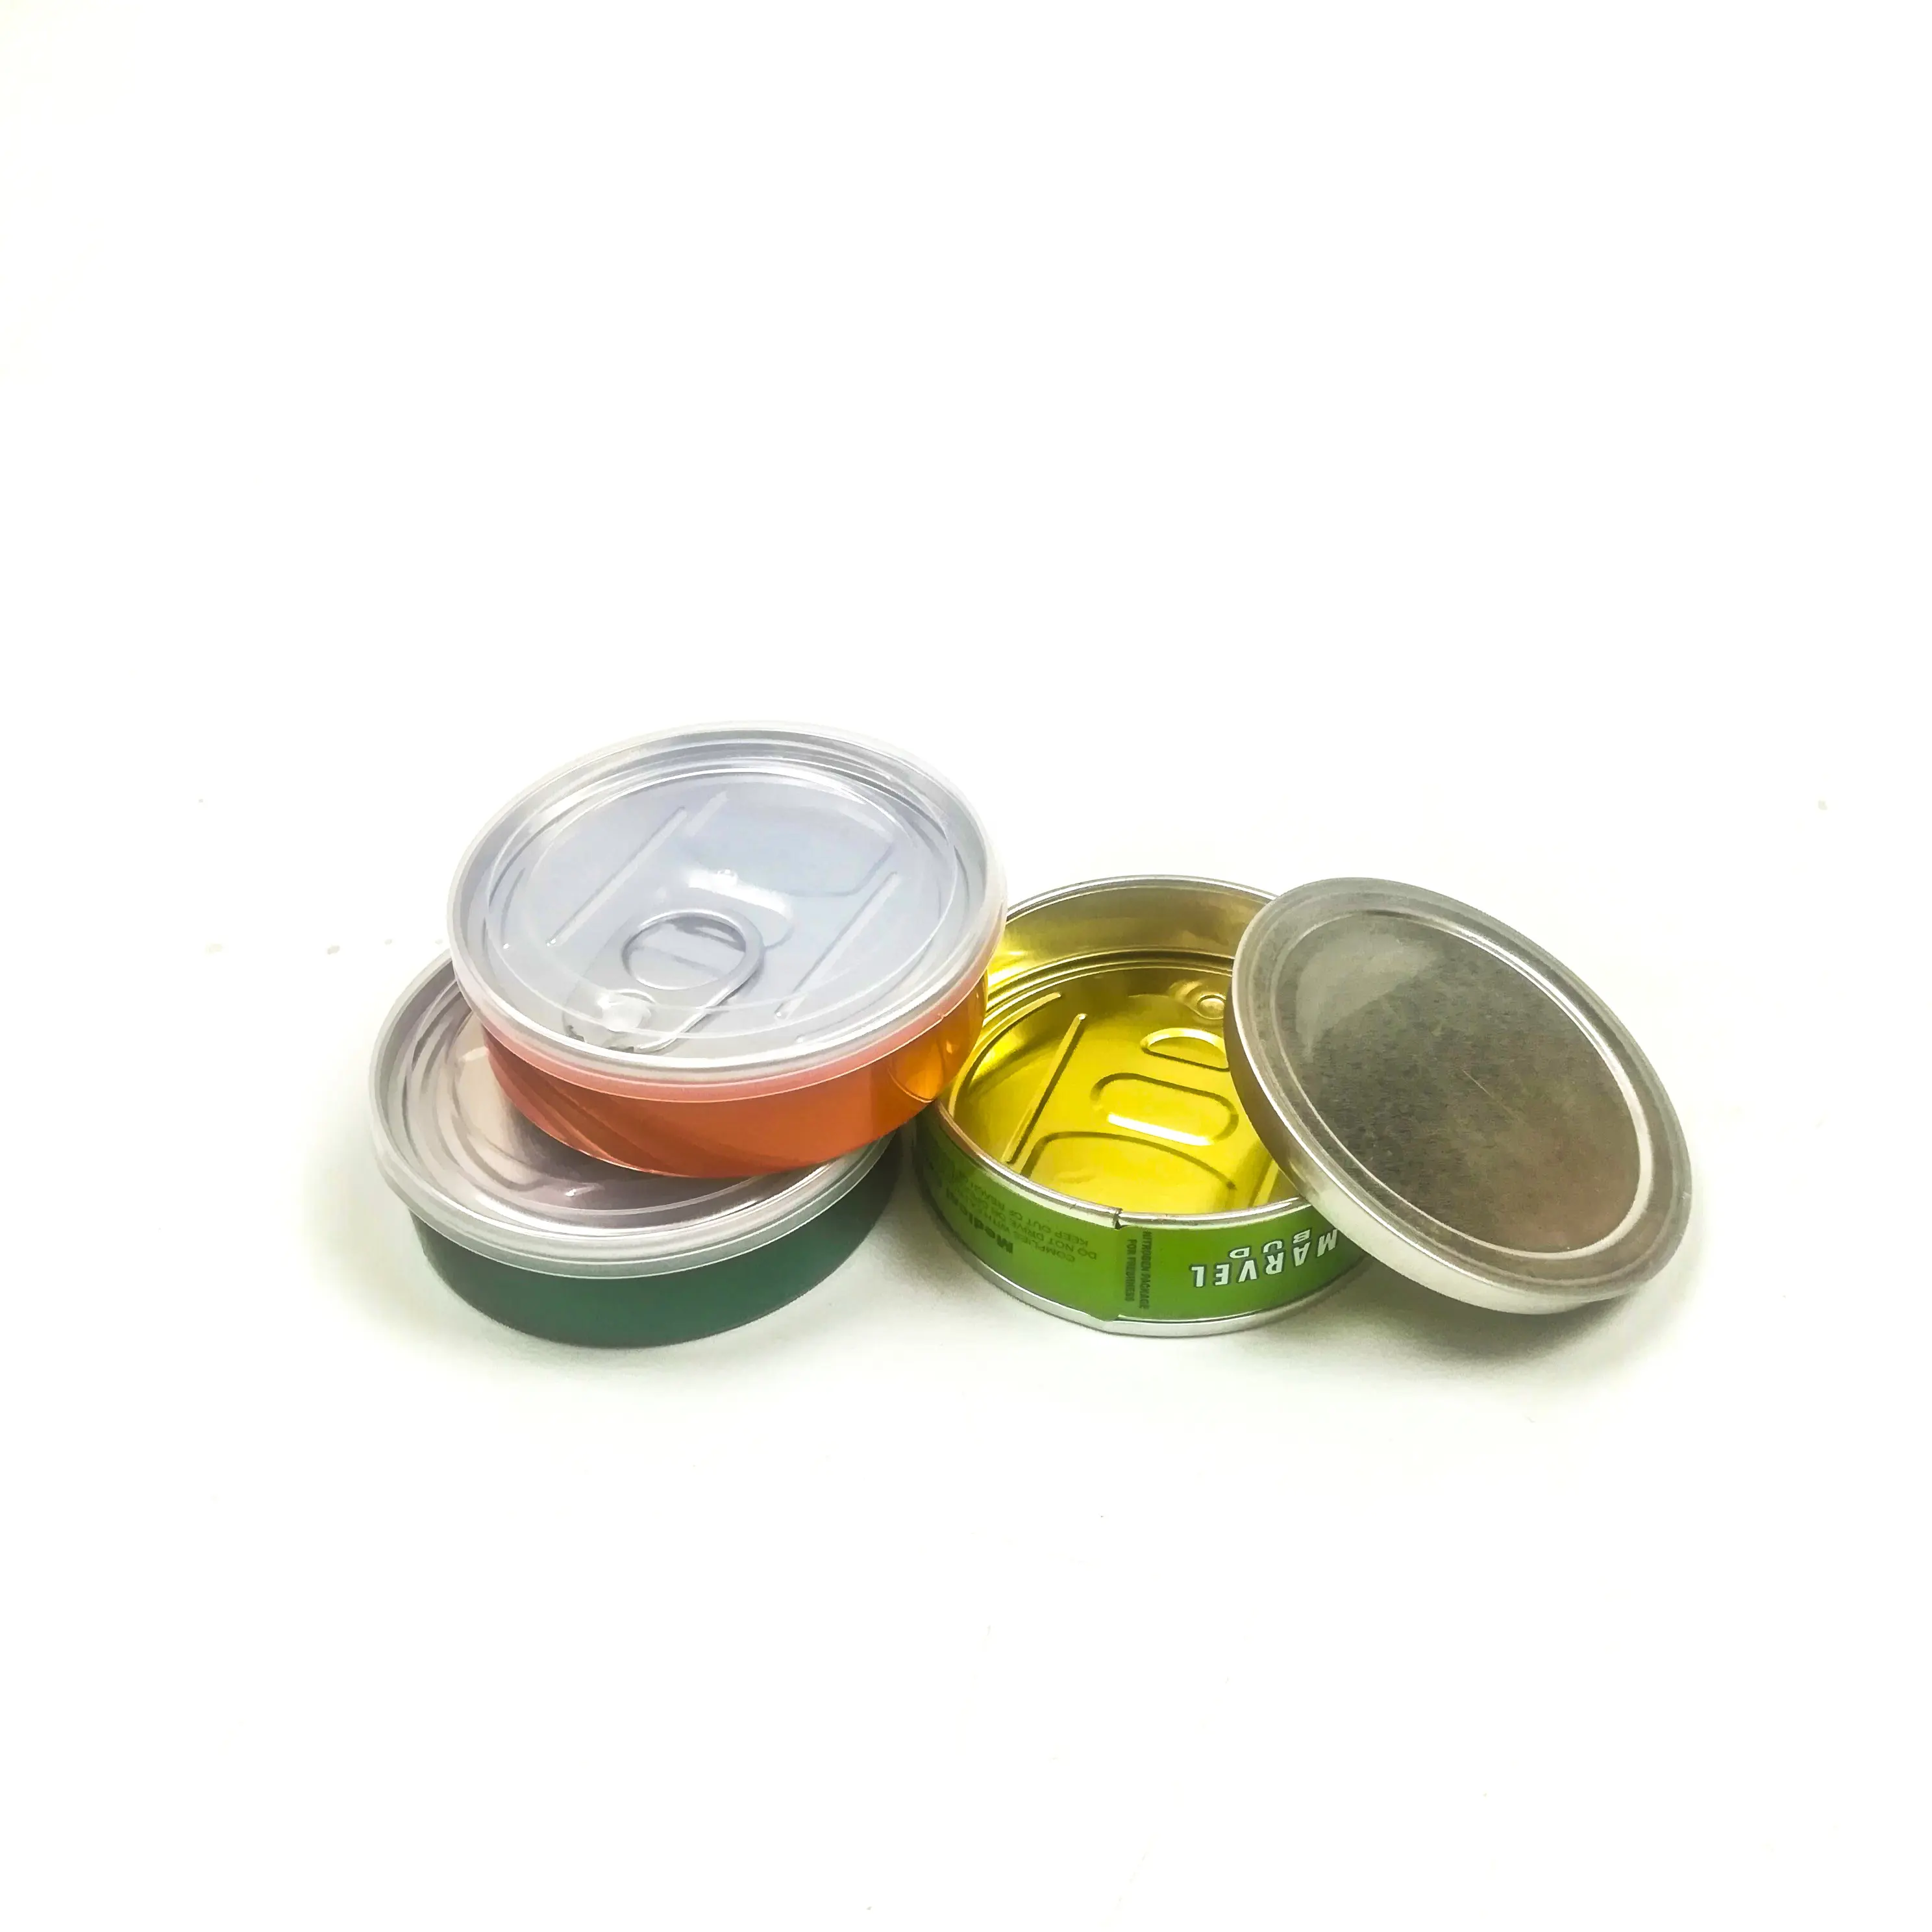 Cali pressitin lata 73,3*24mm atún latas con pegatinas Cali médico Stardawg bañeras etiquetas personalizadas Pressitin de latas de aluminio